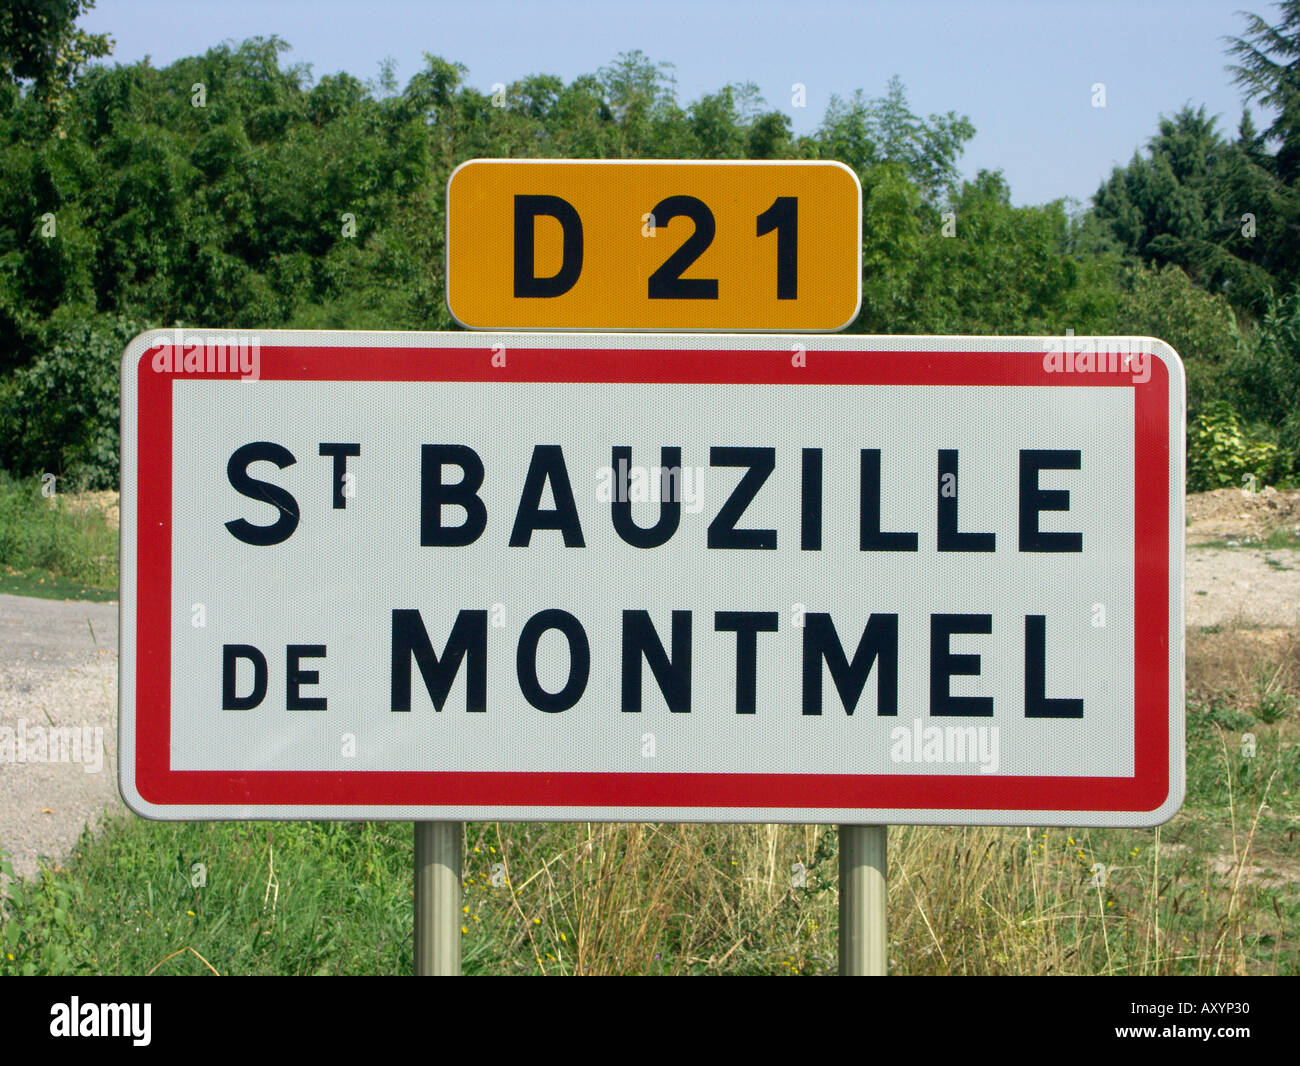 Inscrivez-vous à l'entrée de St Bauzille de Montmel Coteaux du languedoc Gard France Banque D'Images